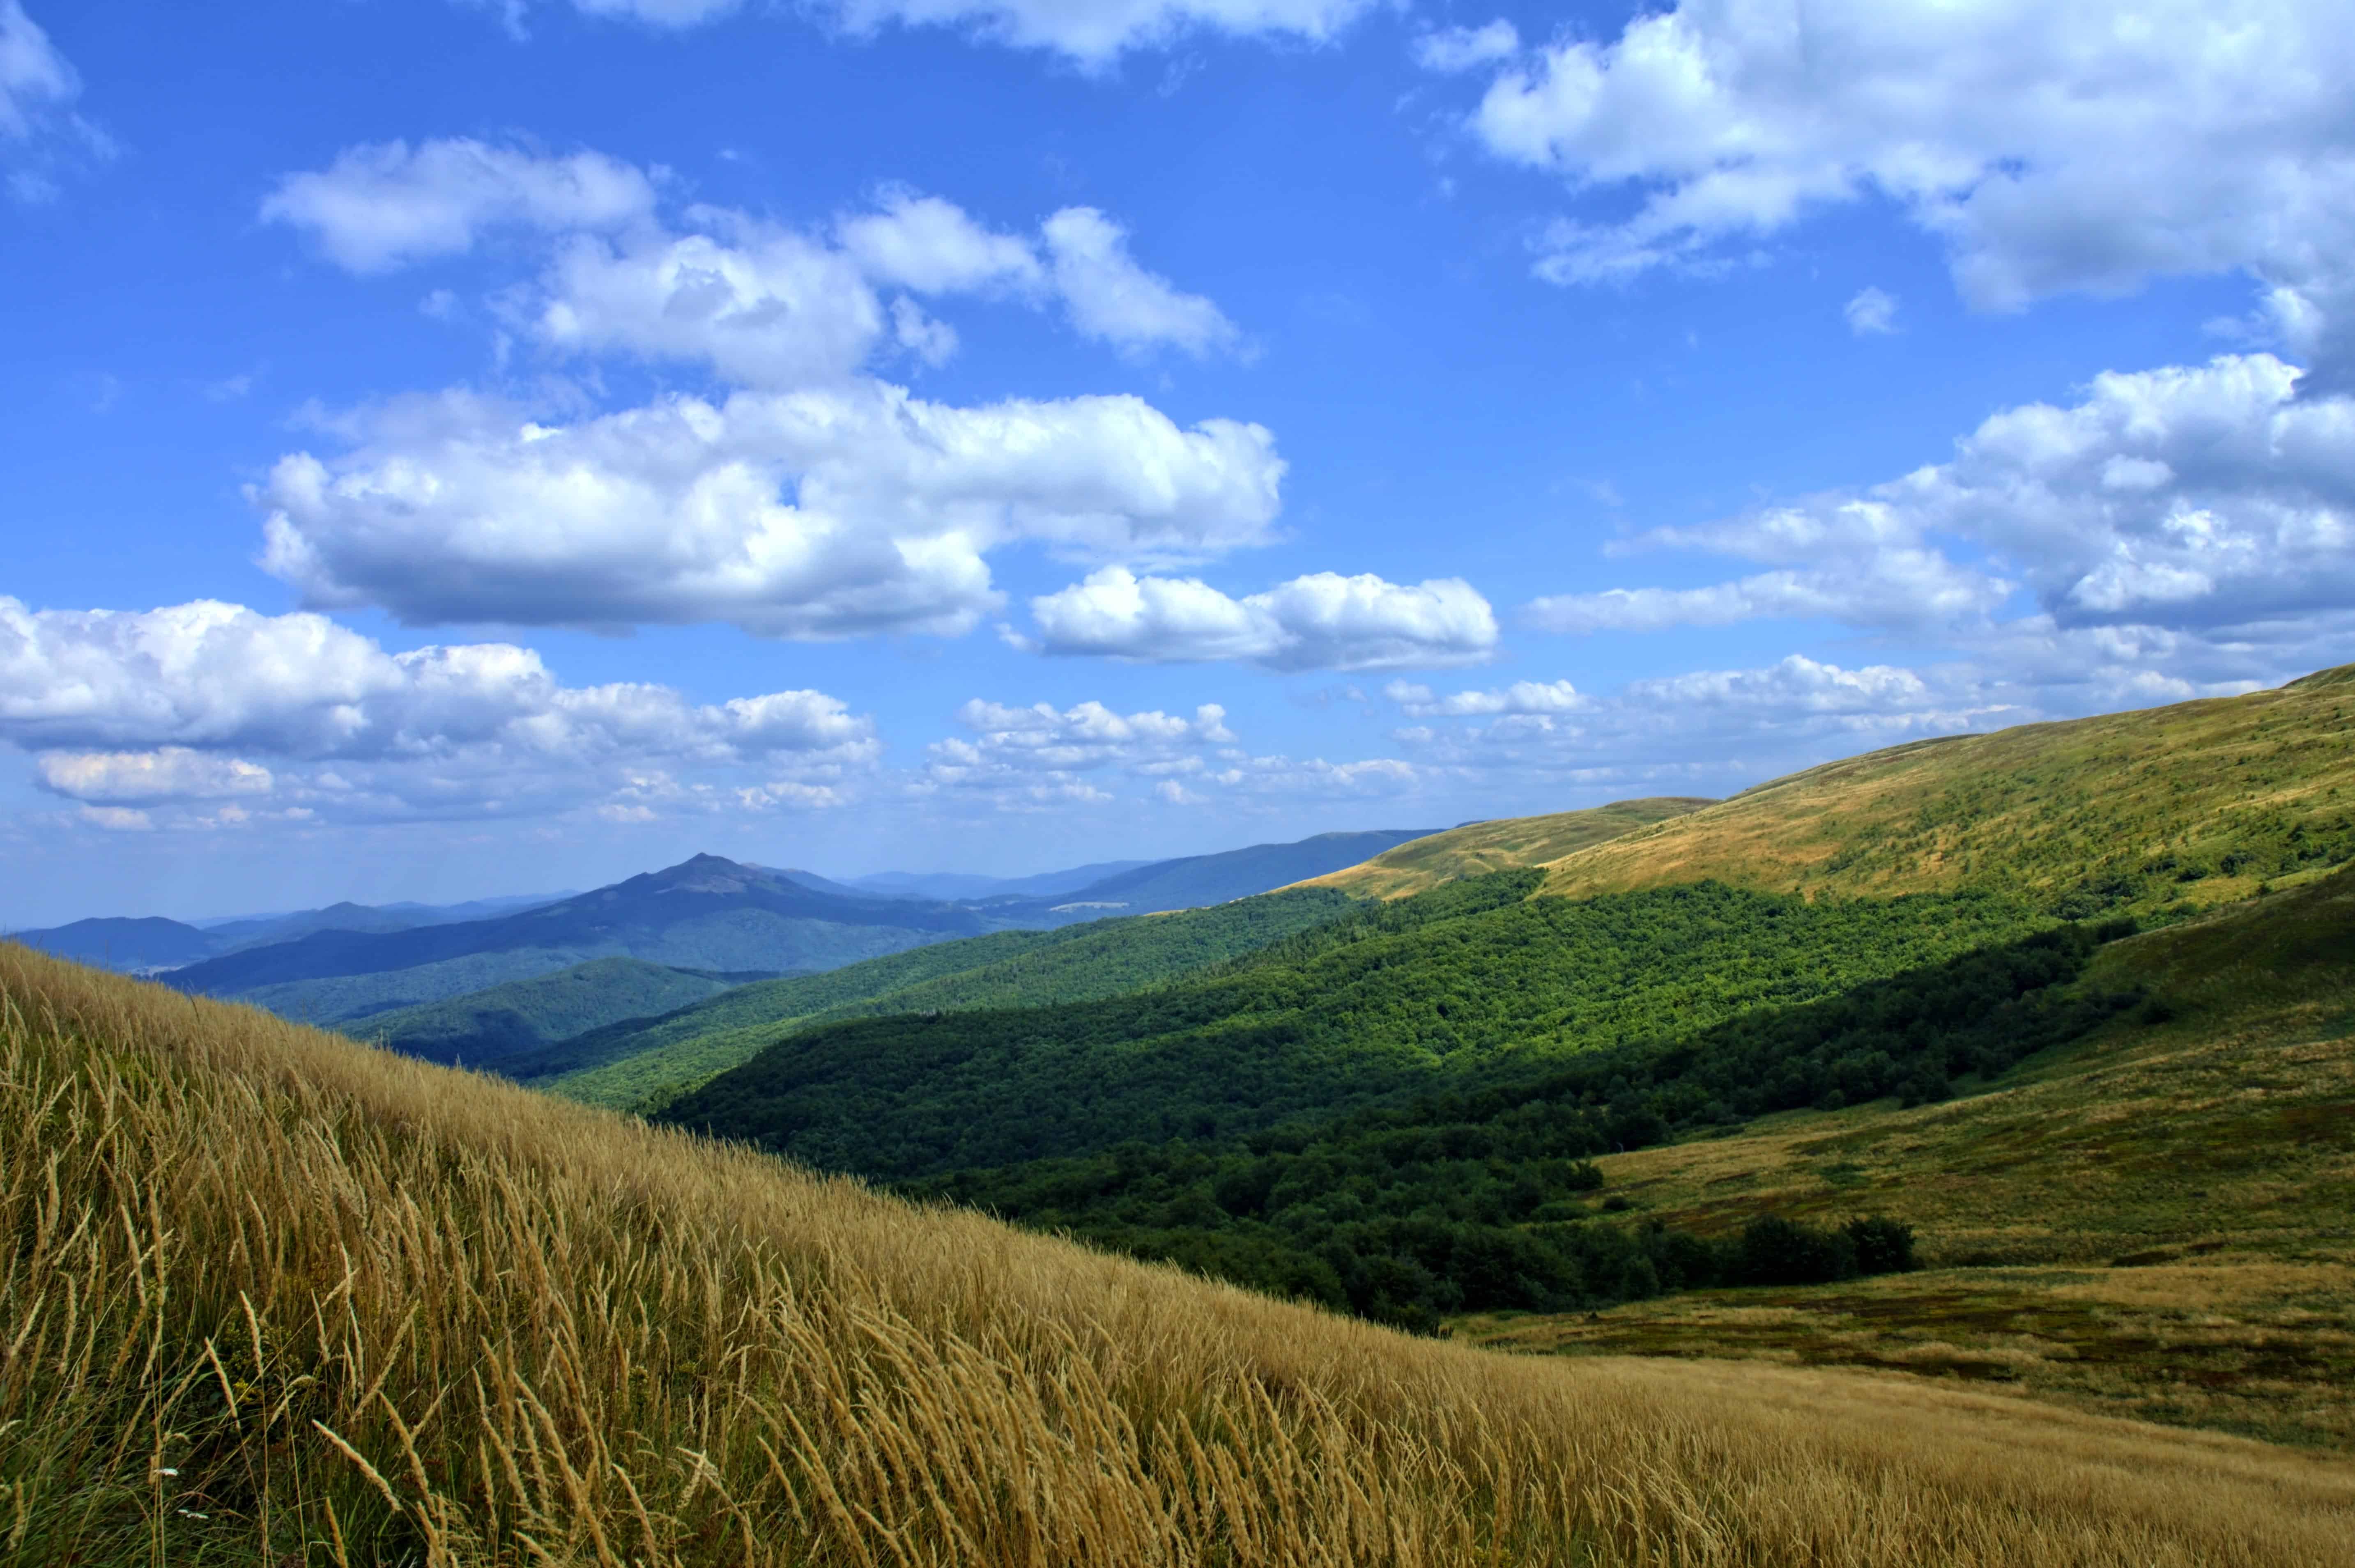 Hình ảnh miễn phí: trên đỉnh đồi, thiên nhiên, phong cảnh, bầu trời xanh,  ánh sáng ban ngày, ngoài trời, cỏ, núi